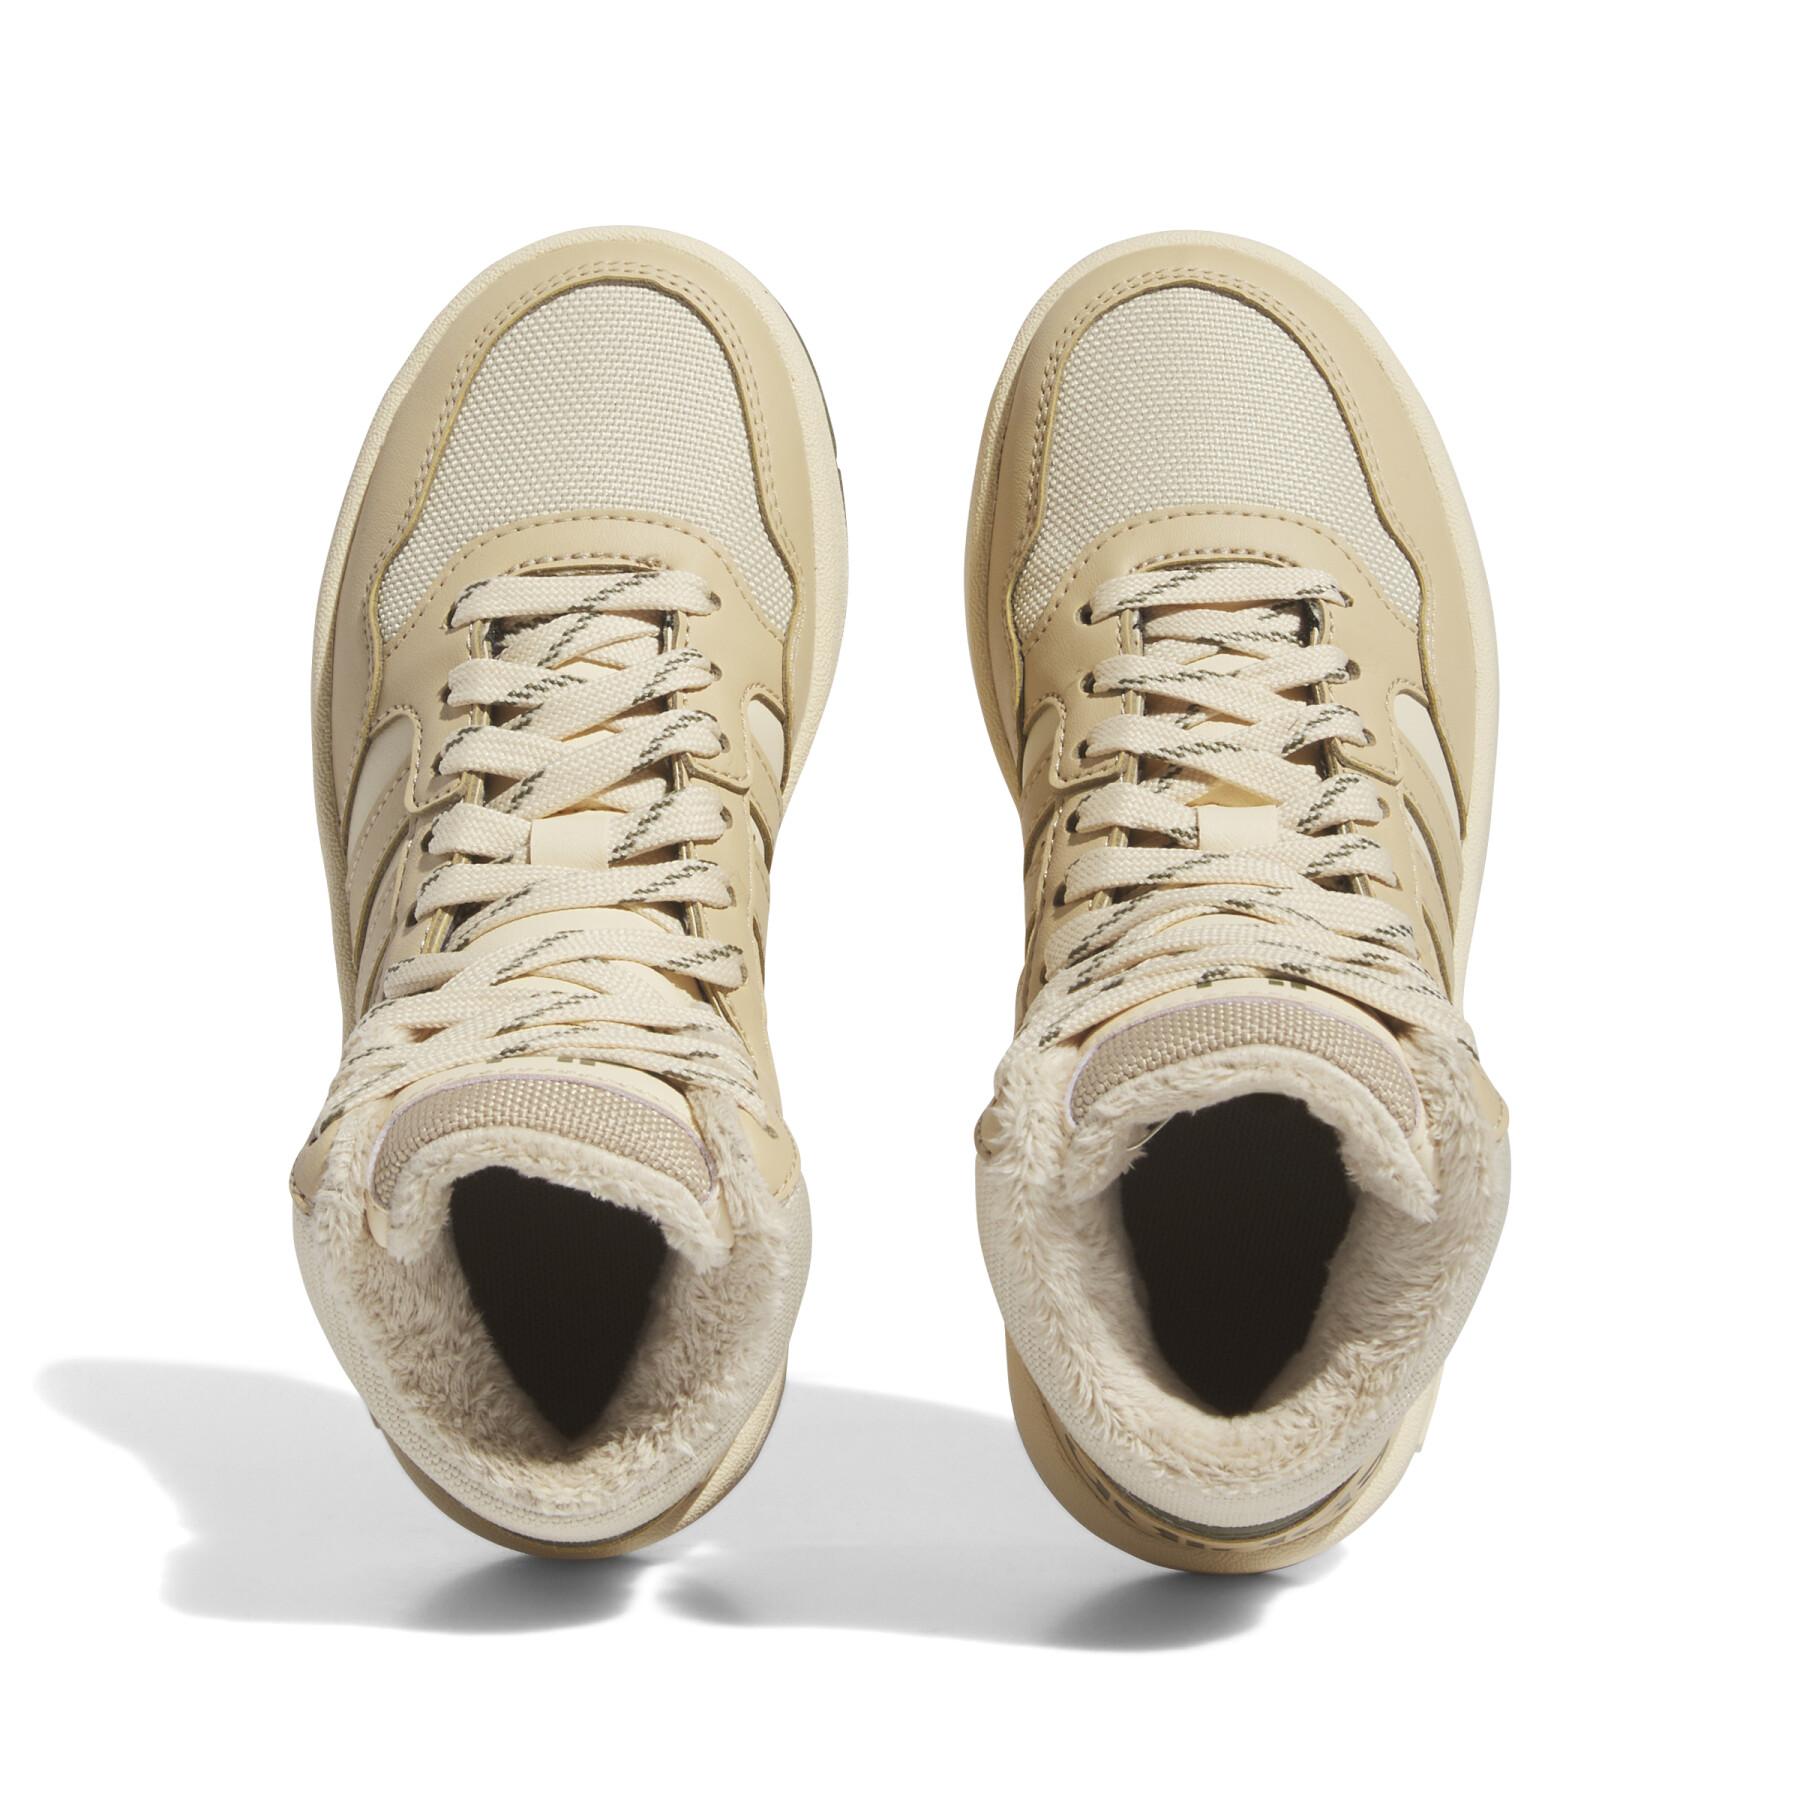 Children's sneakers adidas Originals Hoops 3.0